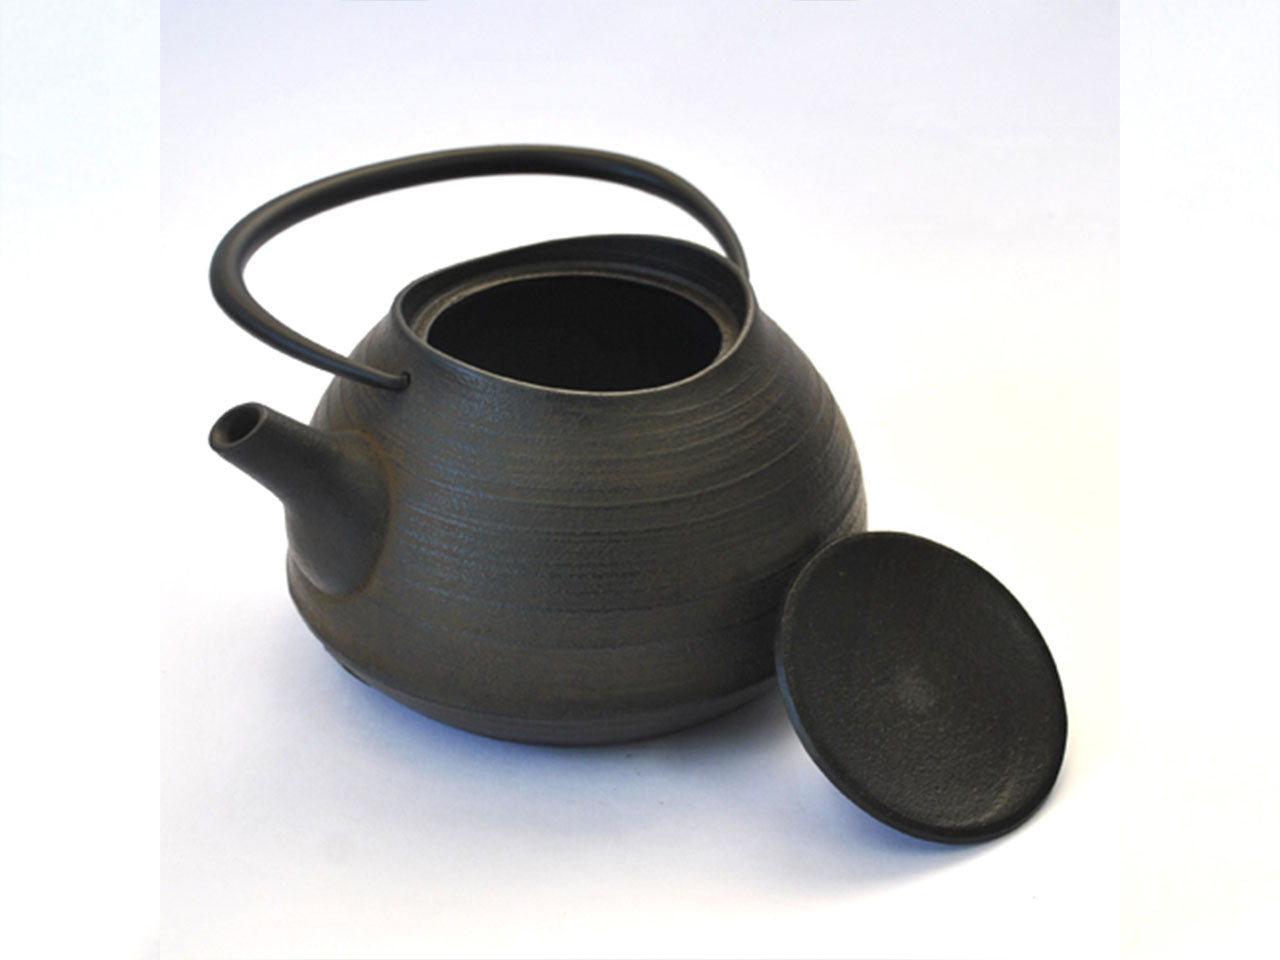 茶具 铁壶 刷毛目 1.0L 棕色 200V电磁炉可用 南部铁器 金属工艺品